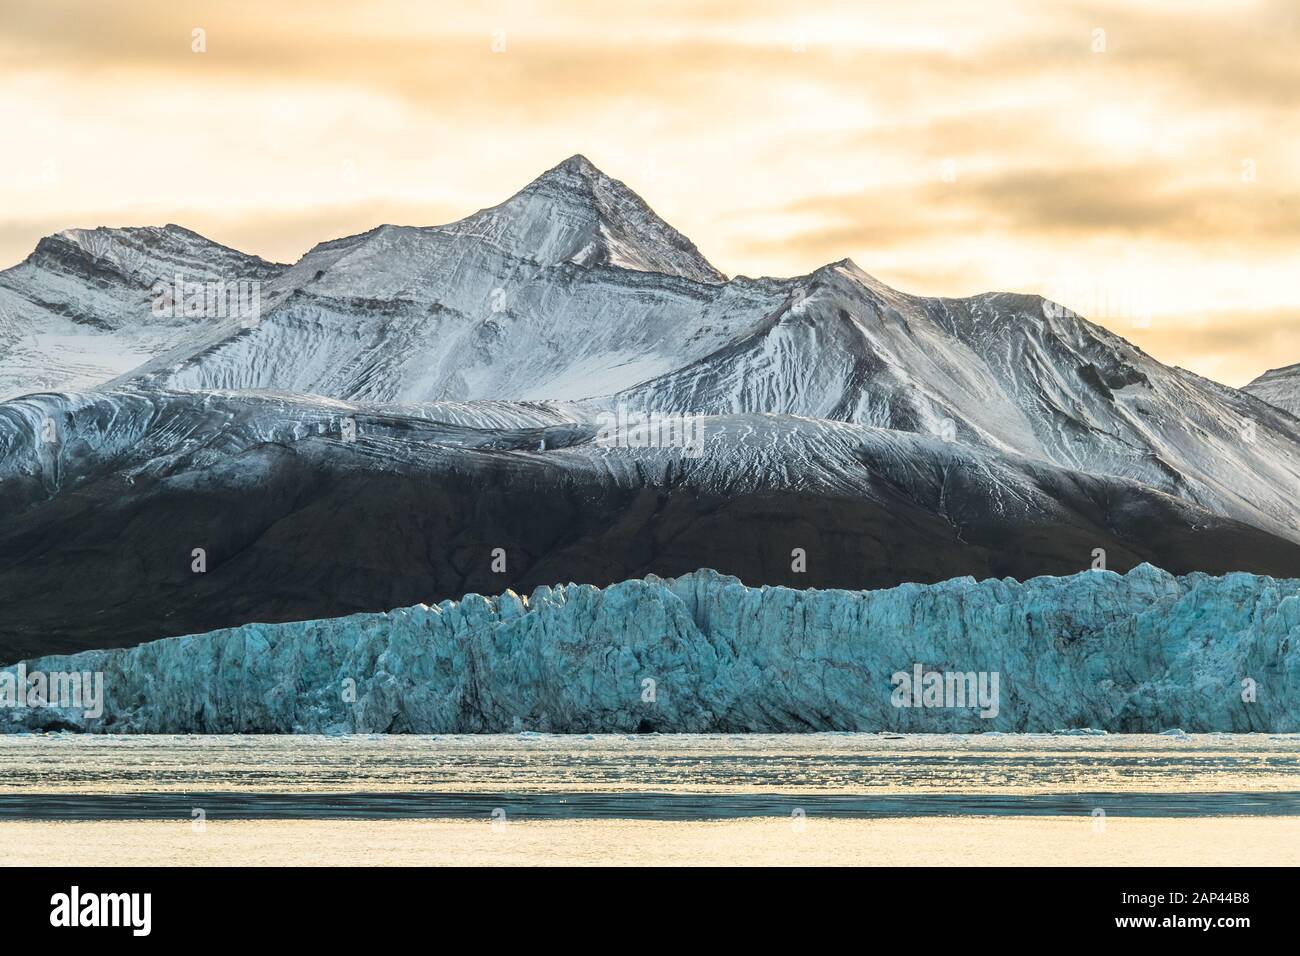 Eisberg, blauer Gletscher, gelber Himmel - eine unglaubliche arktische Landschaft Stockfoto